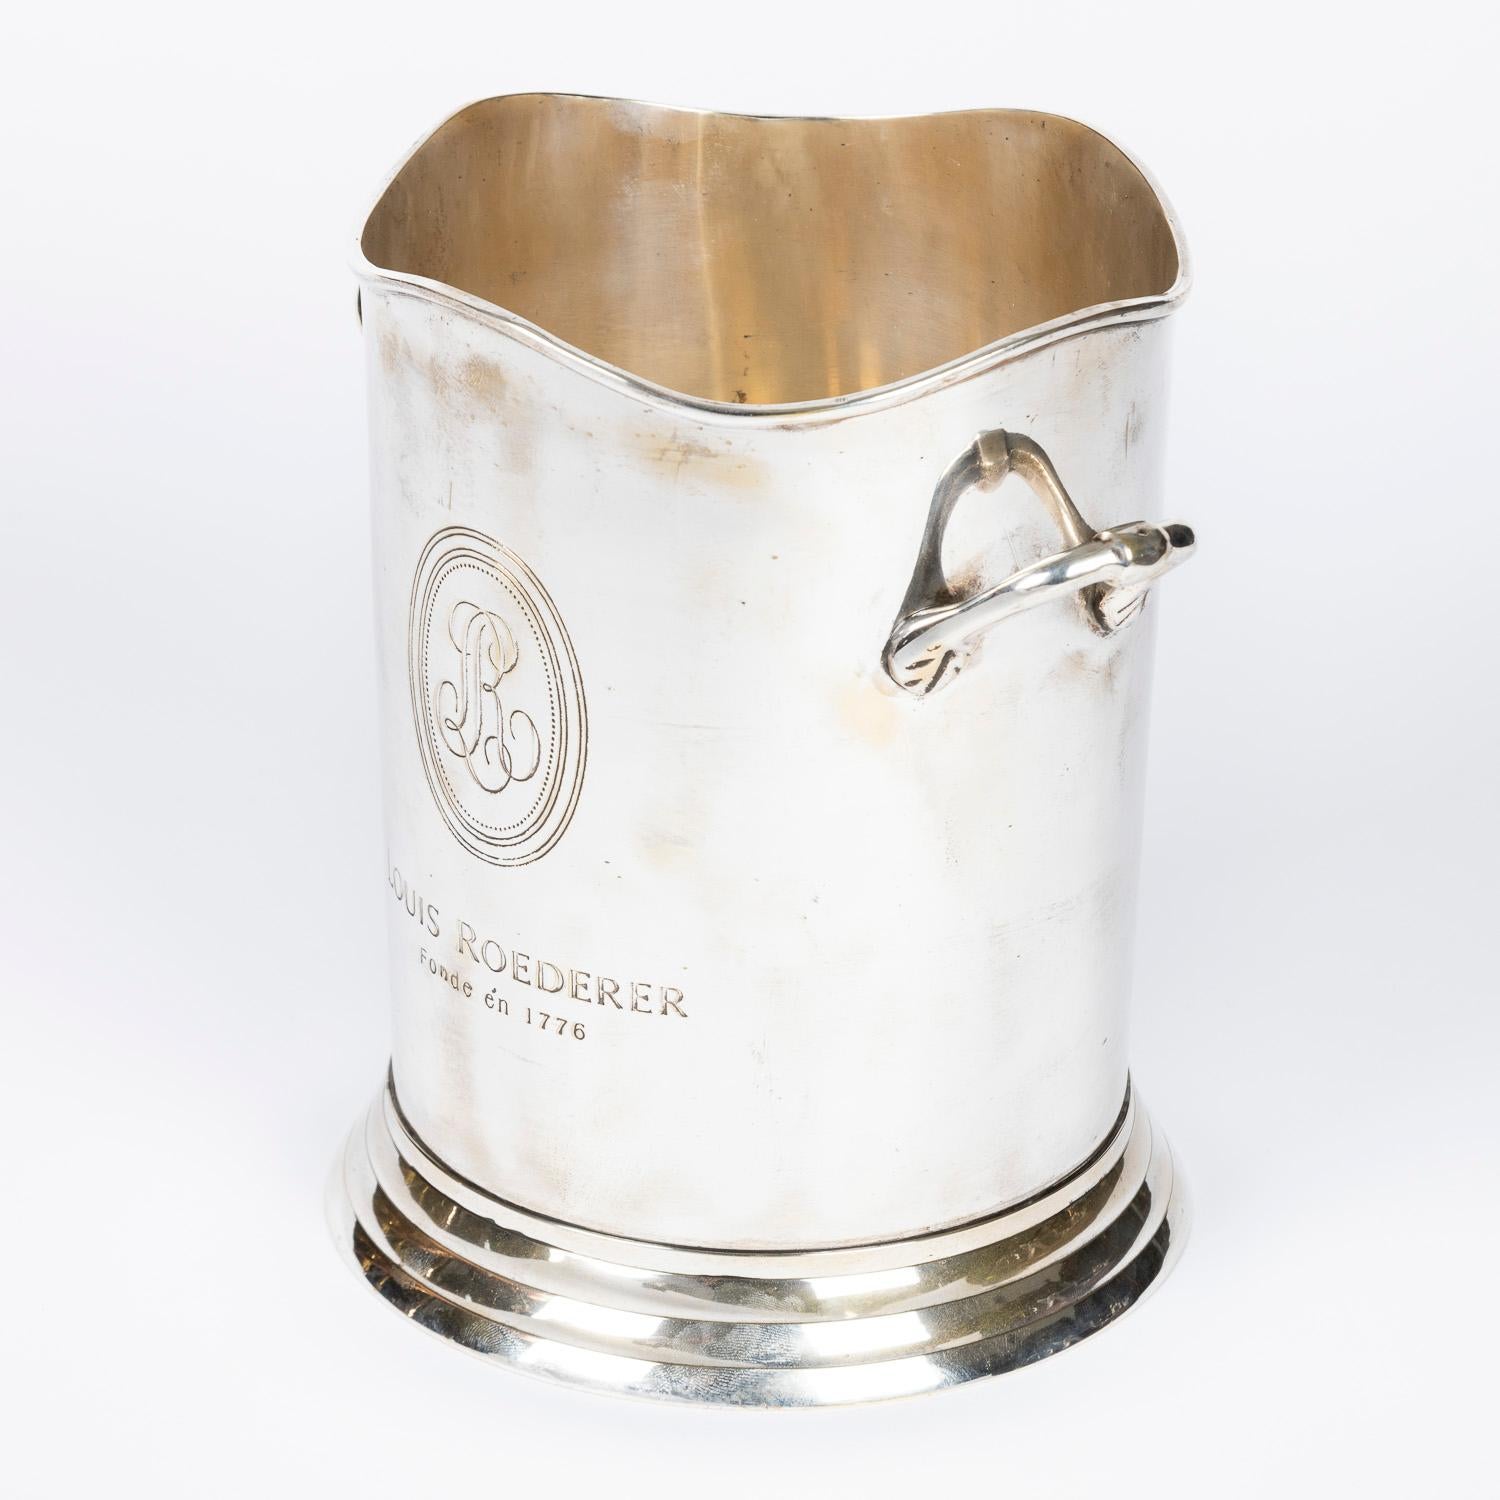 Seau à glace en métal argenté pour le champagne Louis Roederer par James Deakin & Sons de Sheffield.

Marqué : LOUIS ROEDERER Fonde én 1776.

Avec la marque de James Deakin & Sons of Sheffield sur le dessous de la base.

Bouteille non incluse,